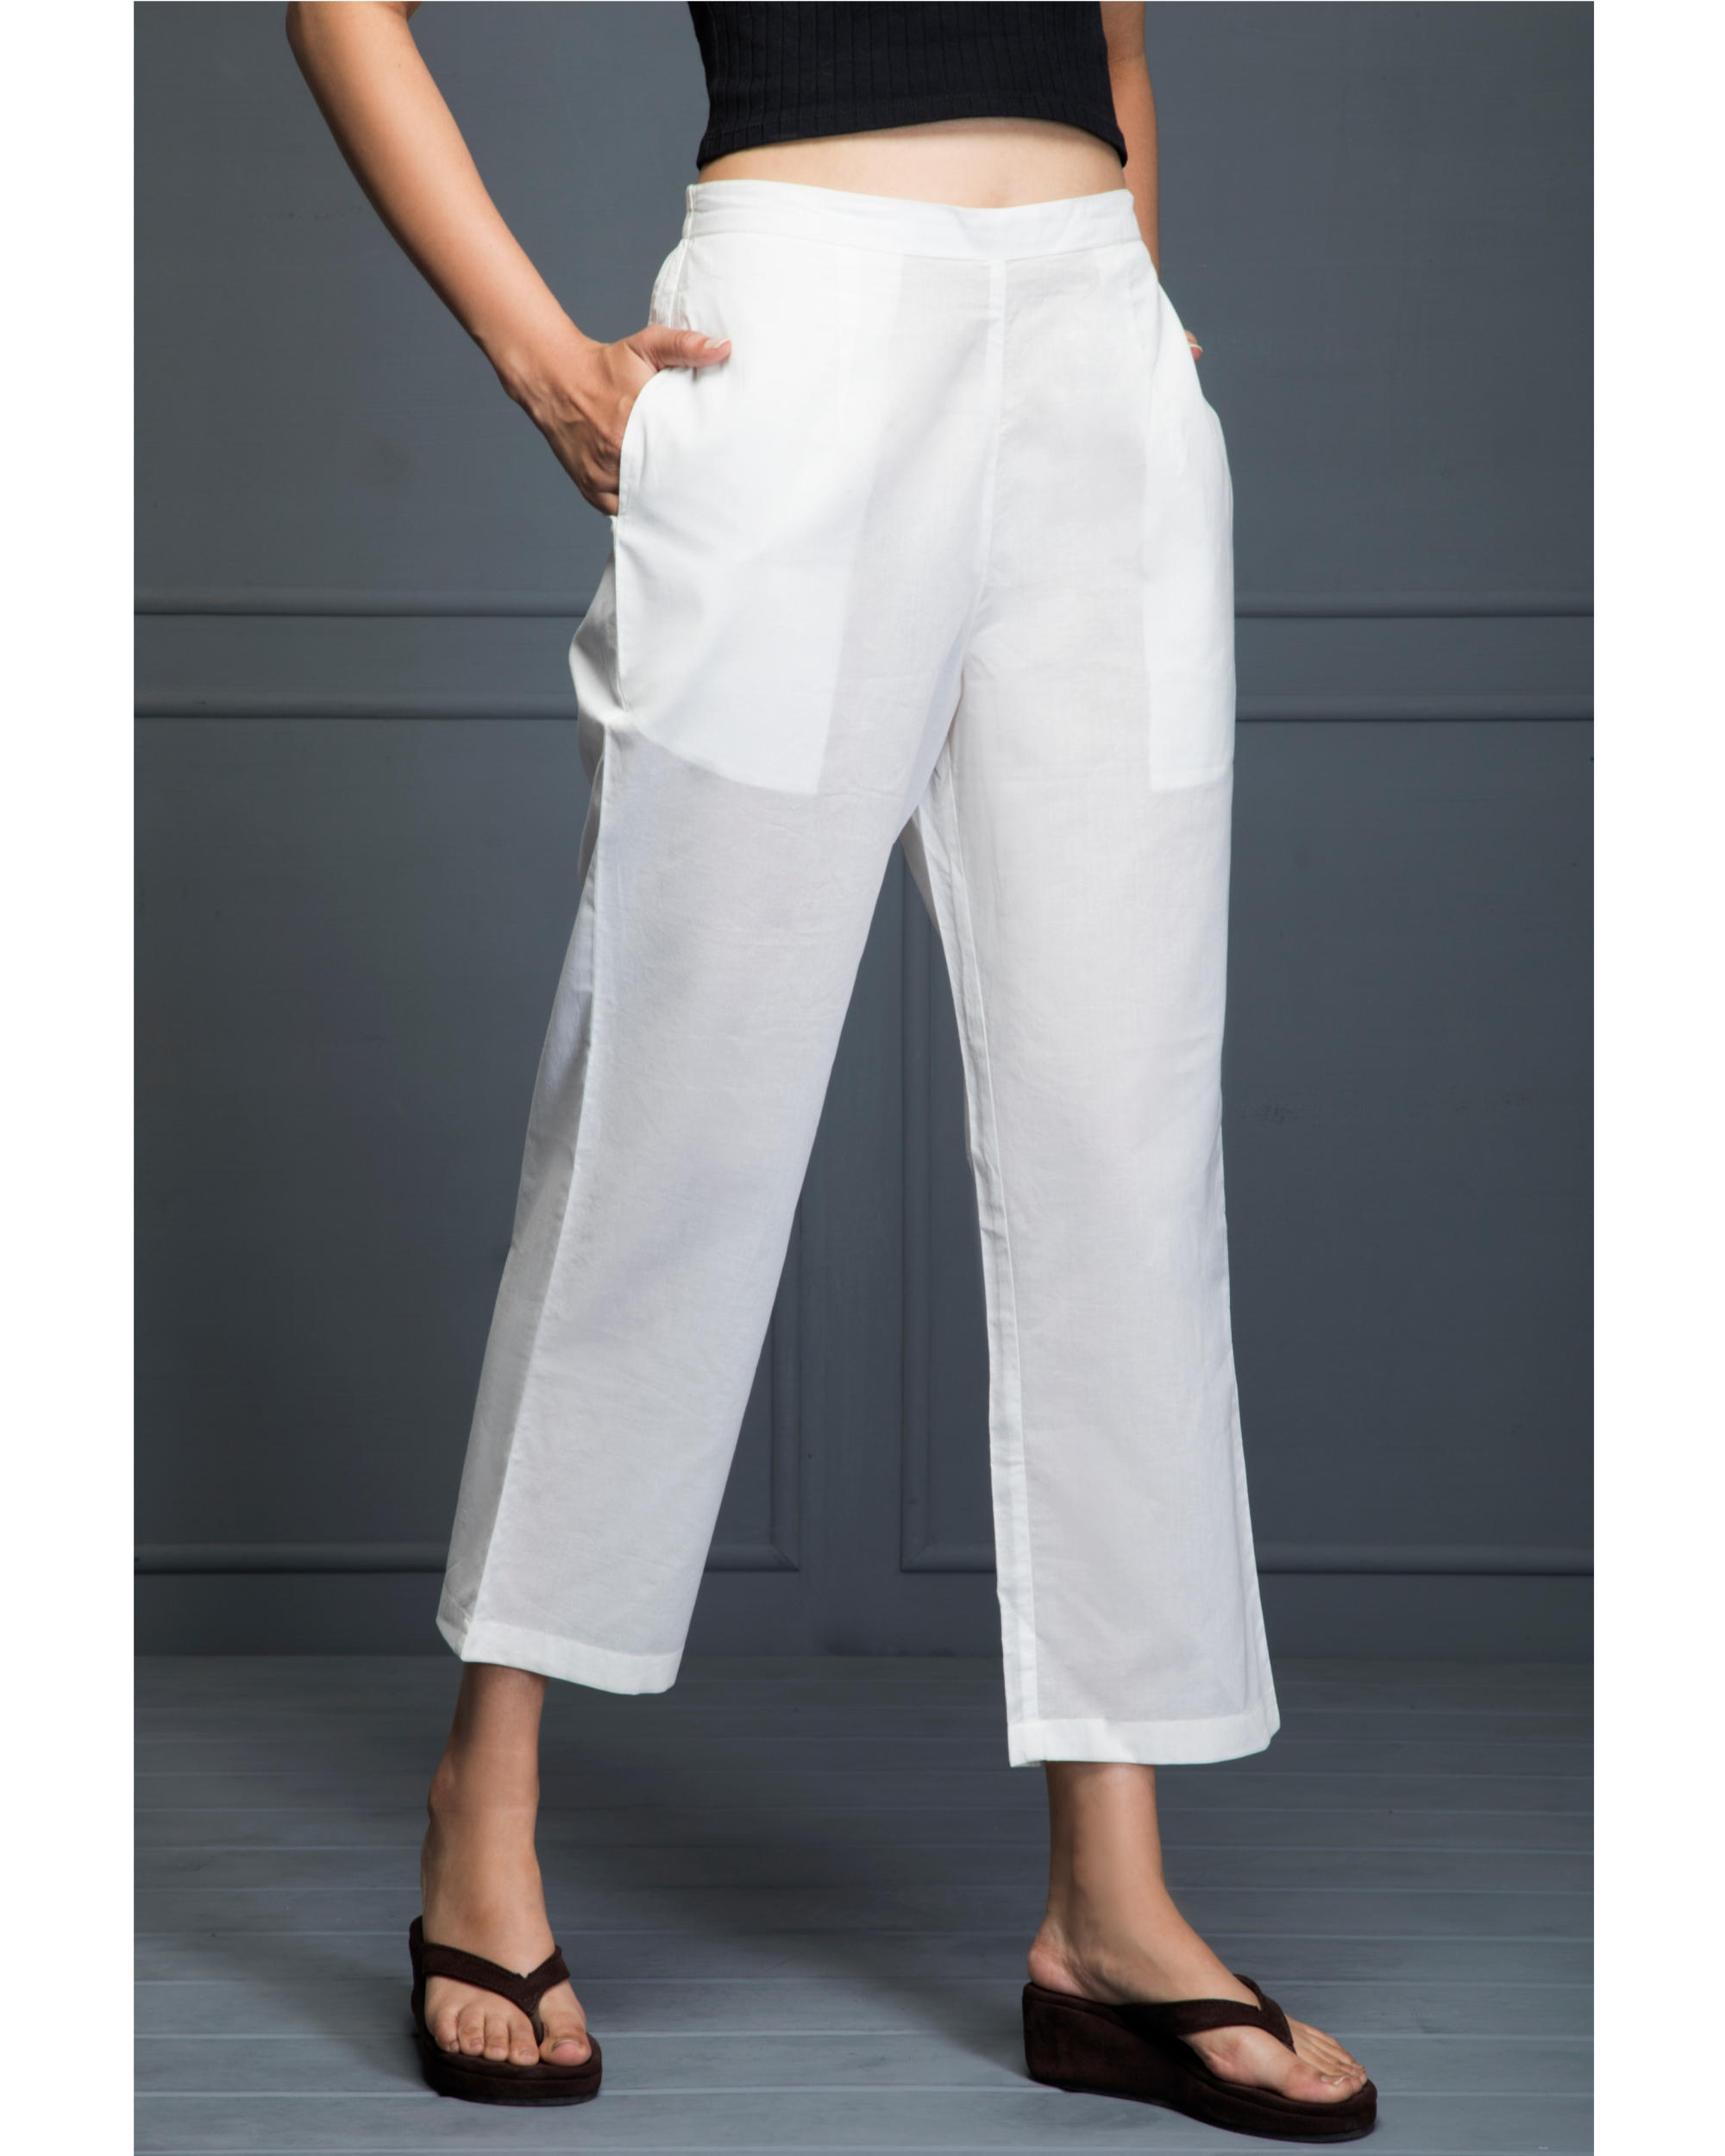 White cambric cotton pants by Santav | The Secret Label